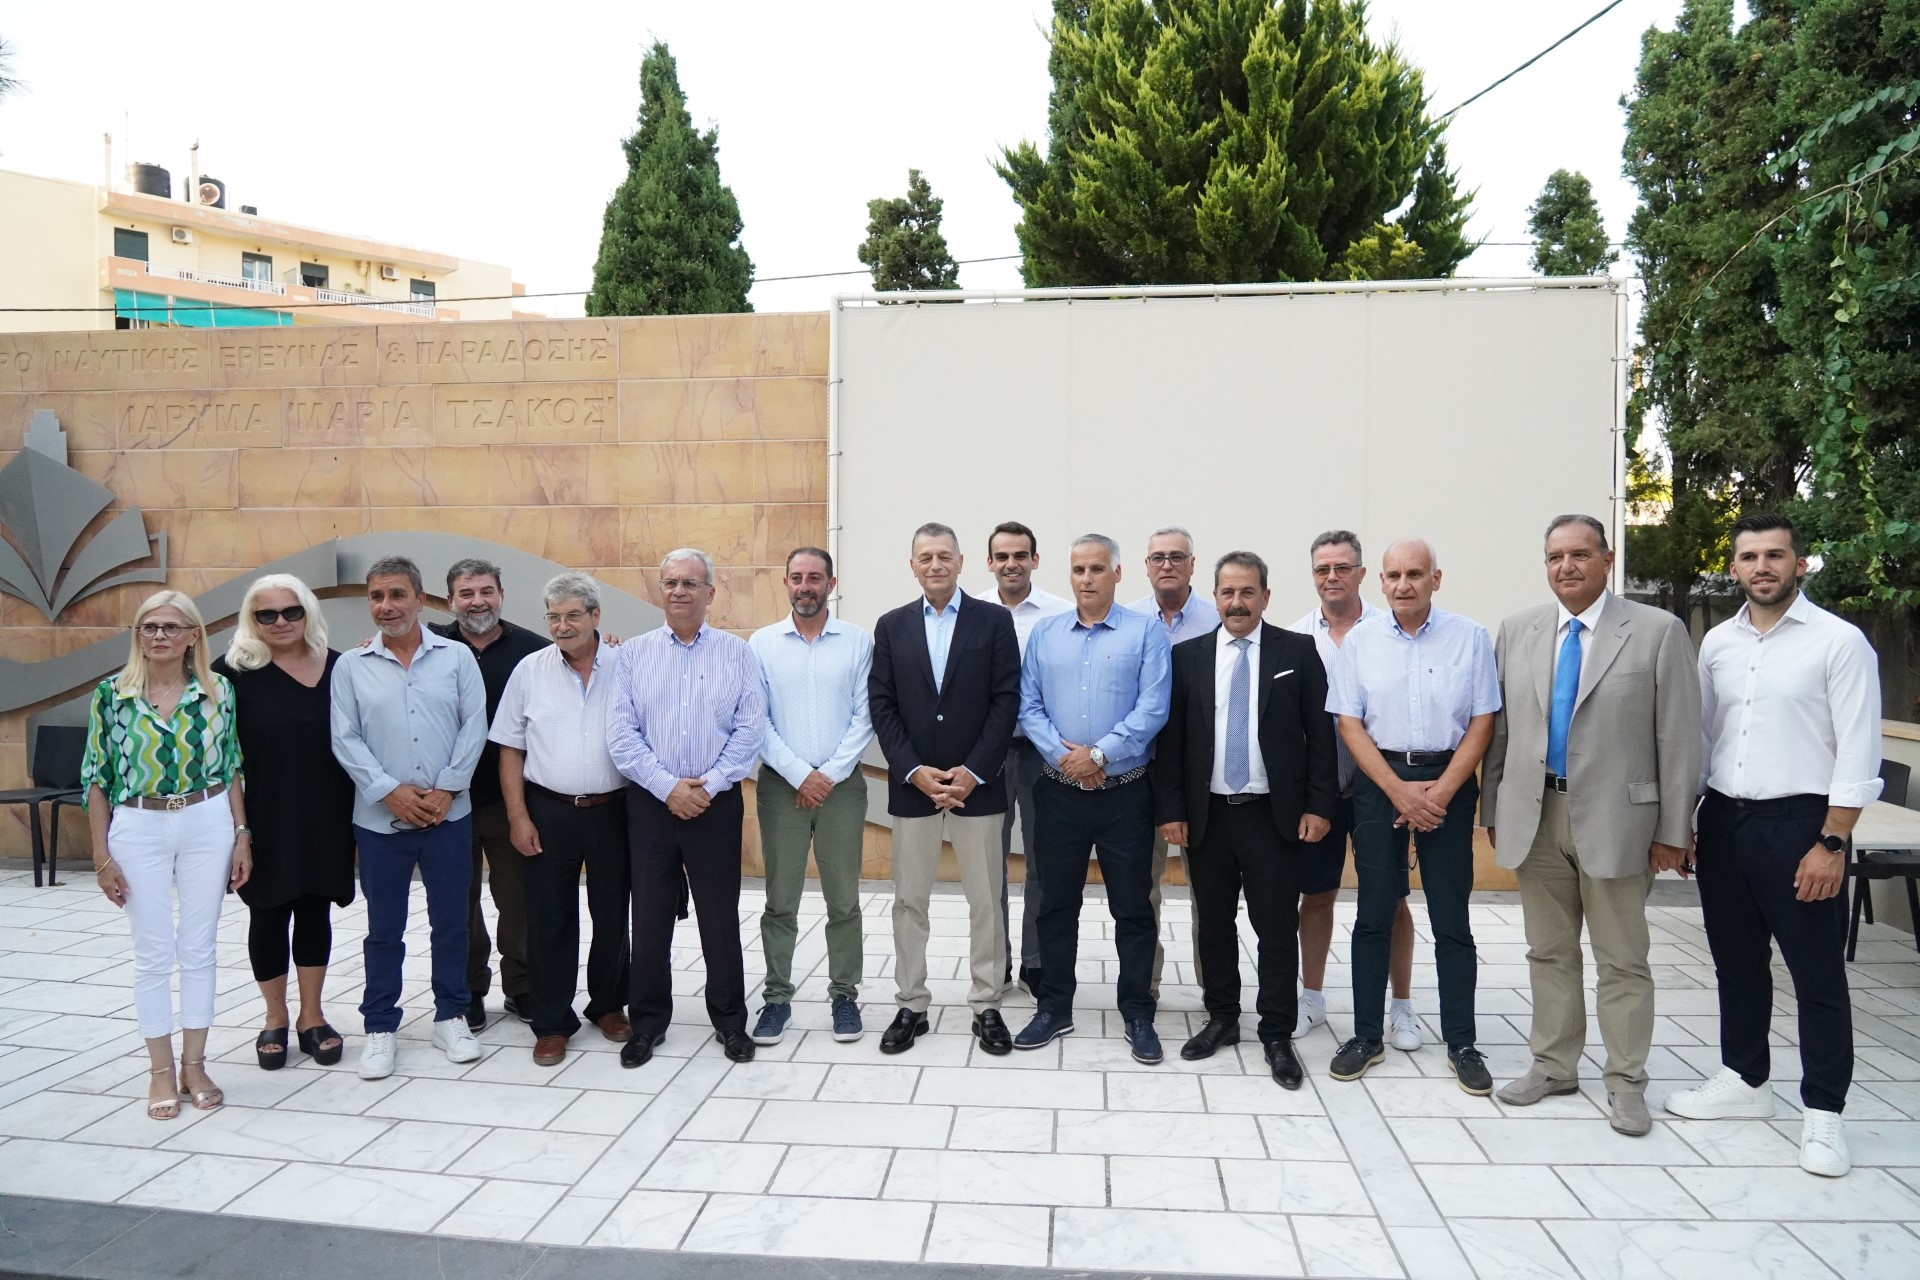 Νέους υποψήφιους για την Περιφέρεια Βορείου Αιγαίου ανακοίνωσε ο Αλκιβιάδης Στεφανής